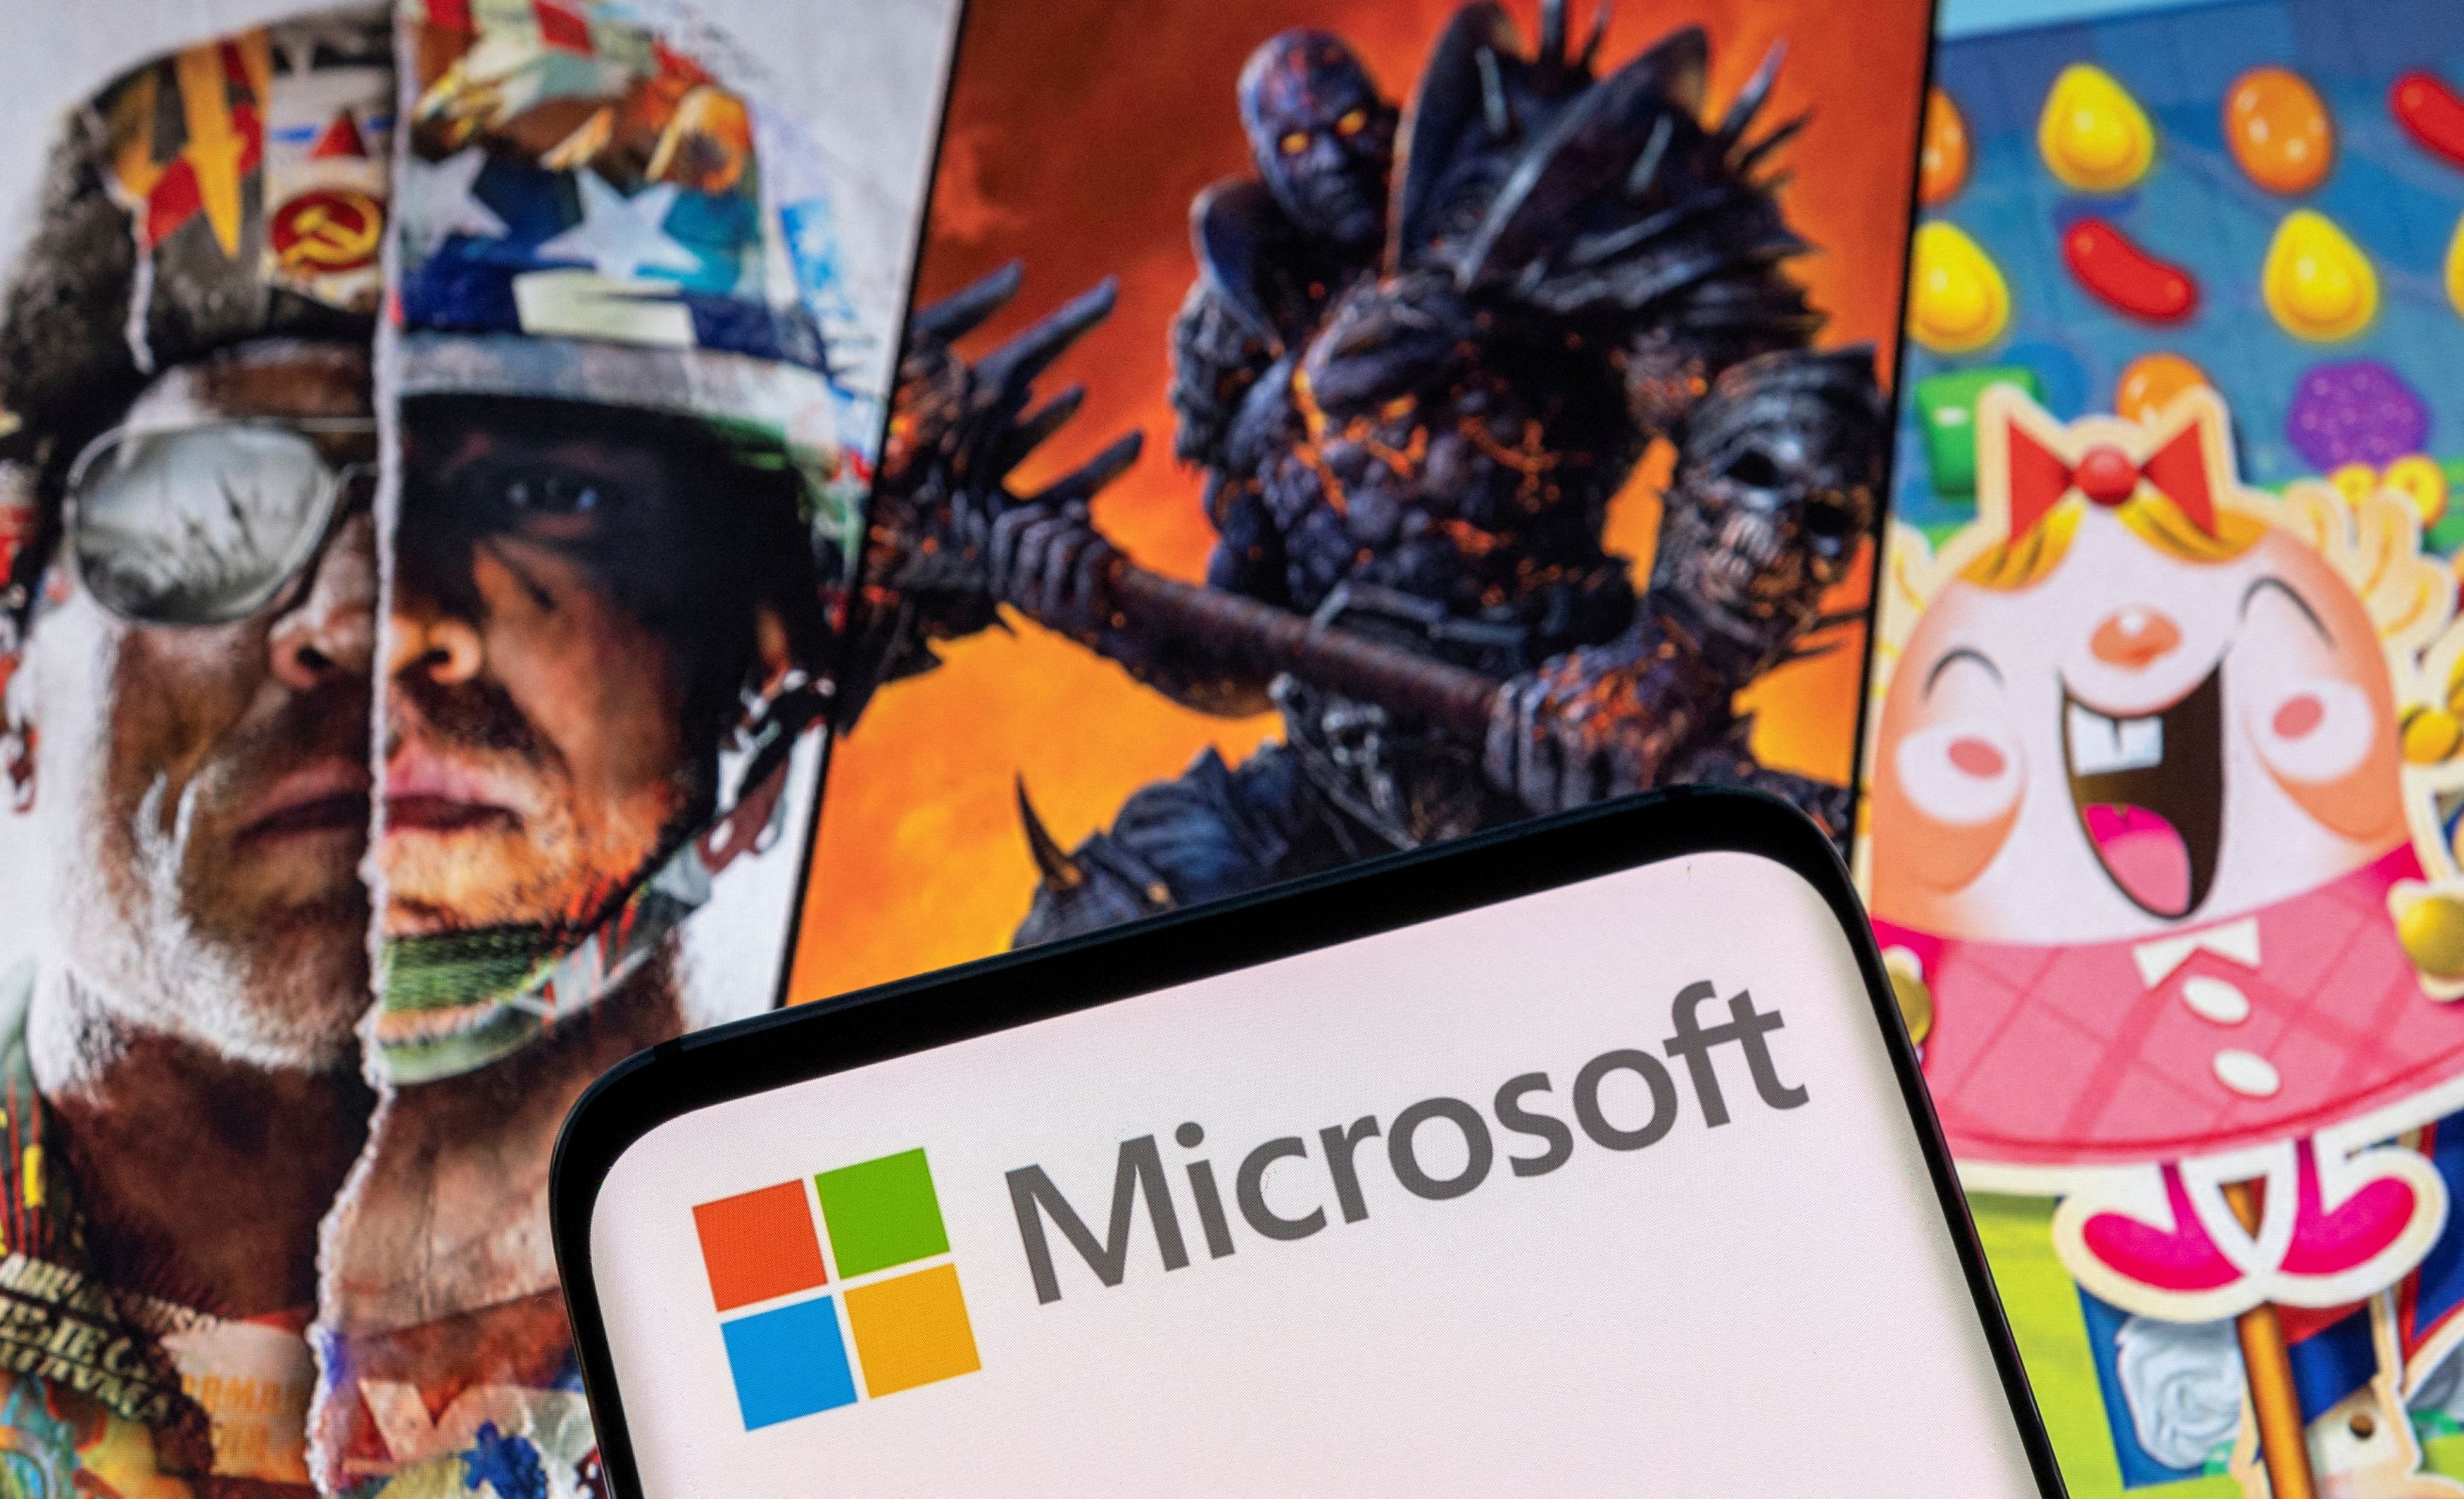 Microsoft: Πράσινο φως από Κομισιόν για την εξαγορά της Activision Blizzard